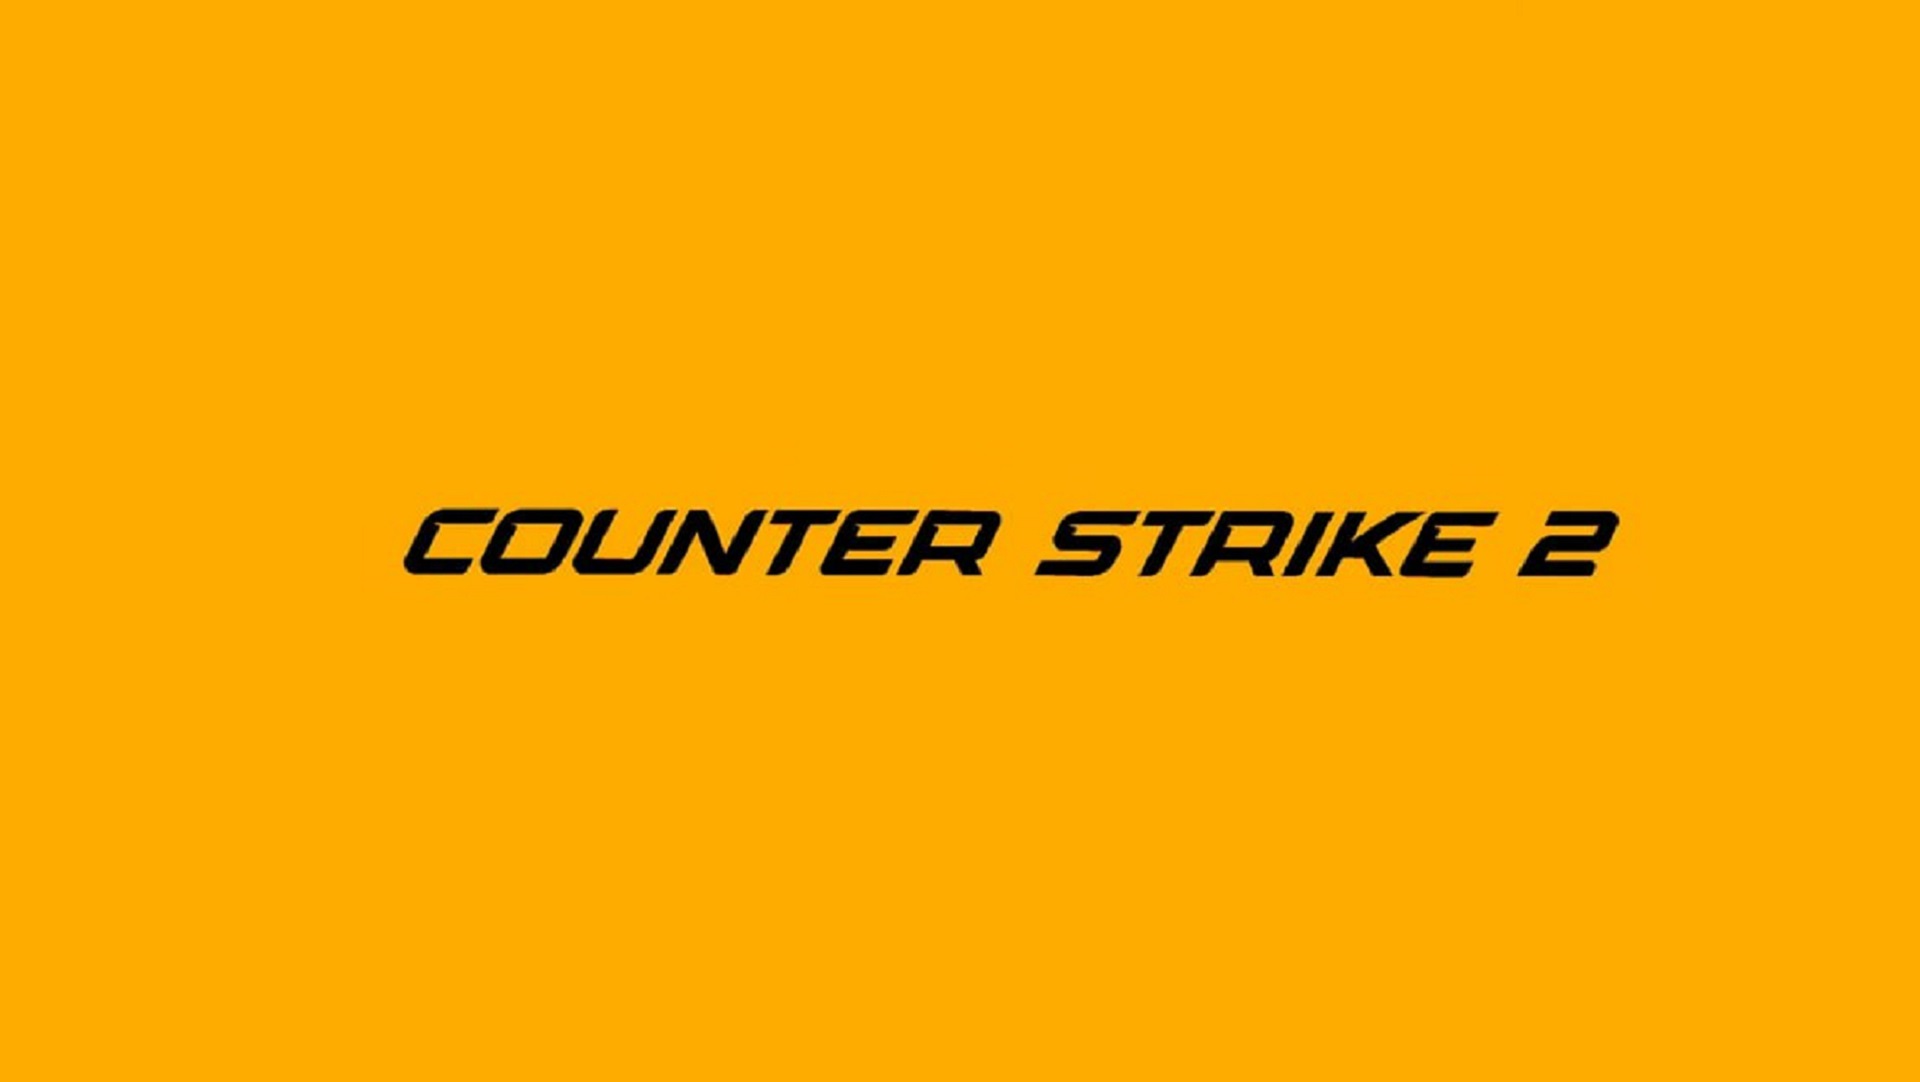 Цены на скины в Counter-Strike 2 снизились почти на 50% с анонса даты выхода